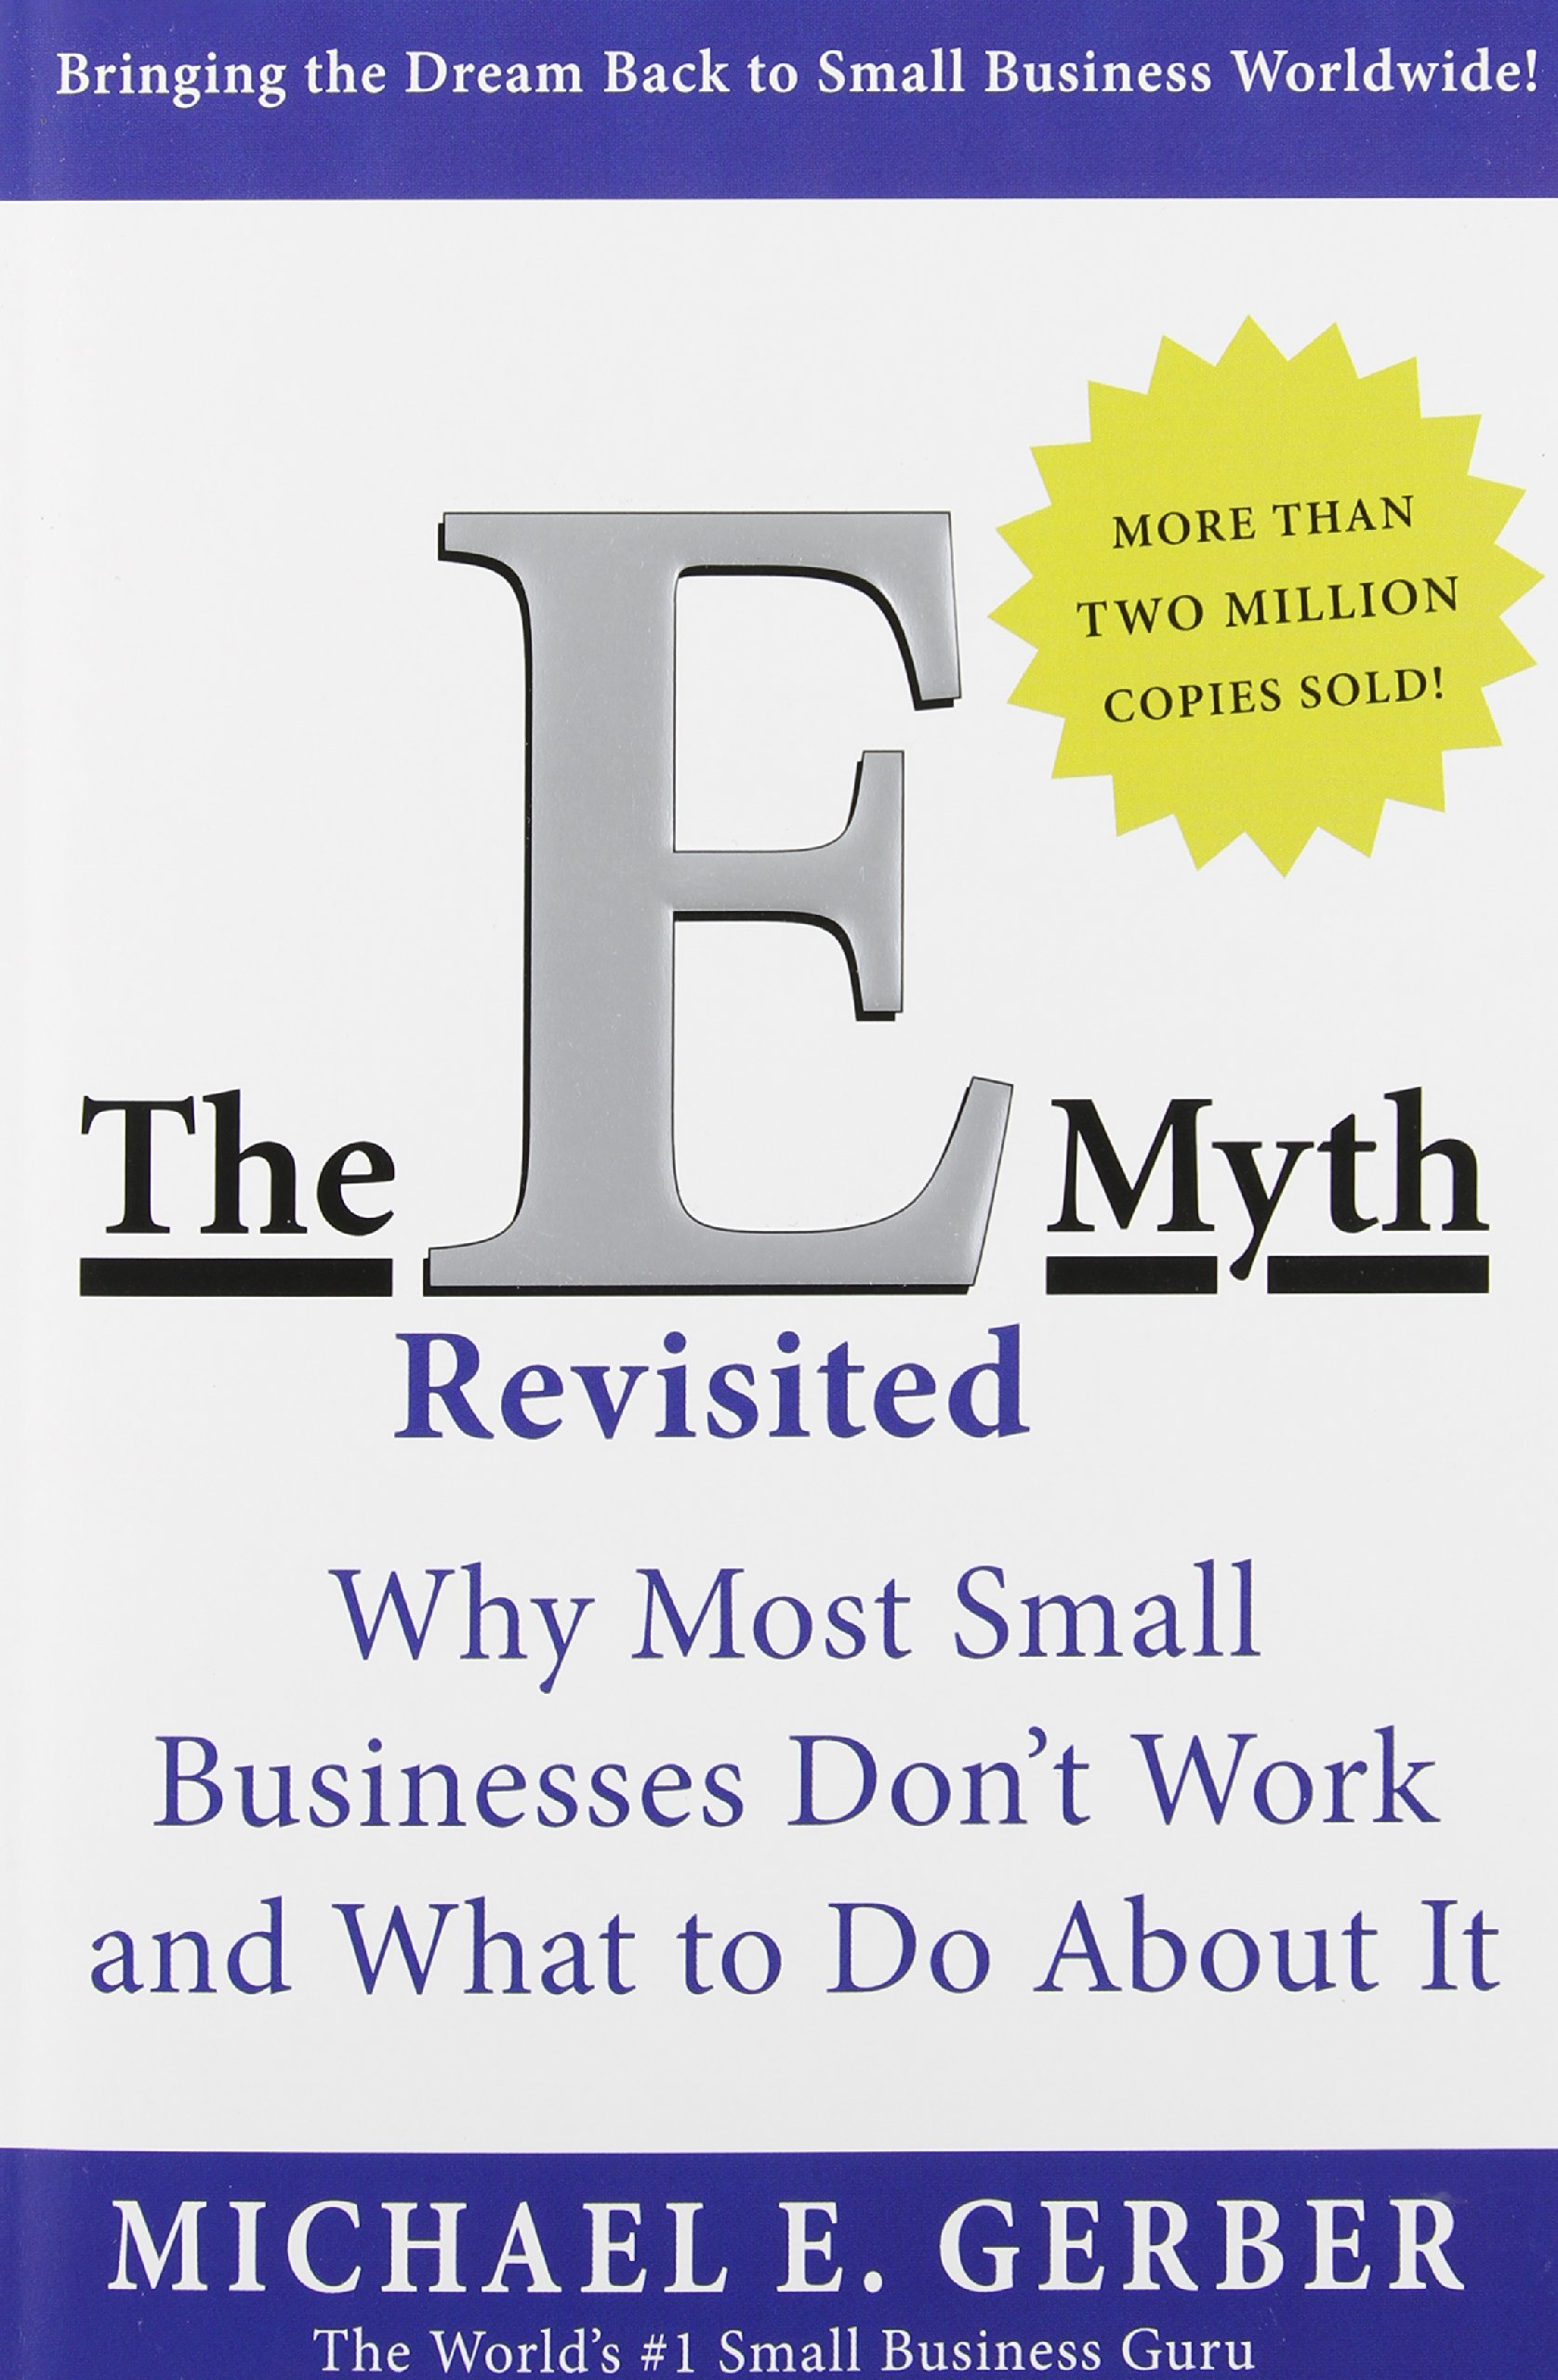 The-E-Myth-Revisted-cover.jpg